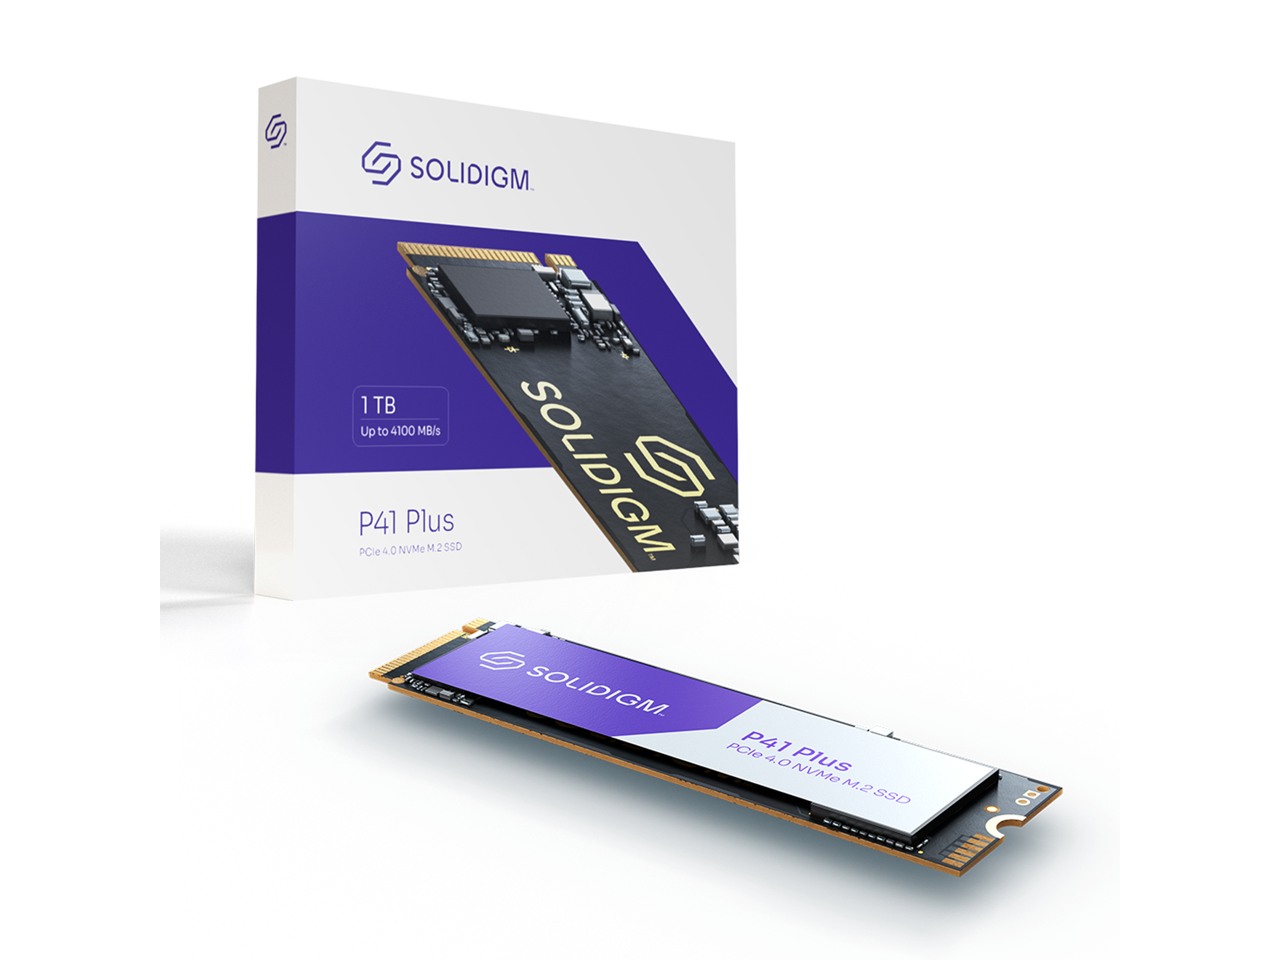 Solidigm P41 Plus Series 1TB, M.2 2280 PCIe 4.0 x4 $55